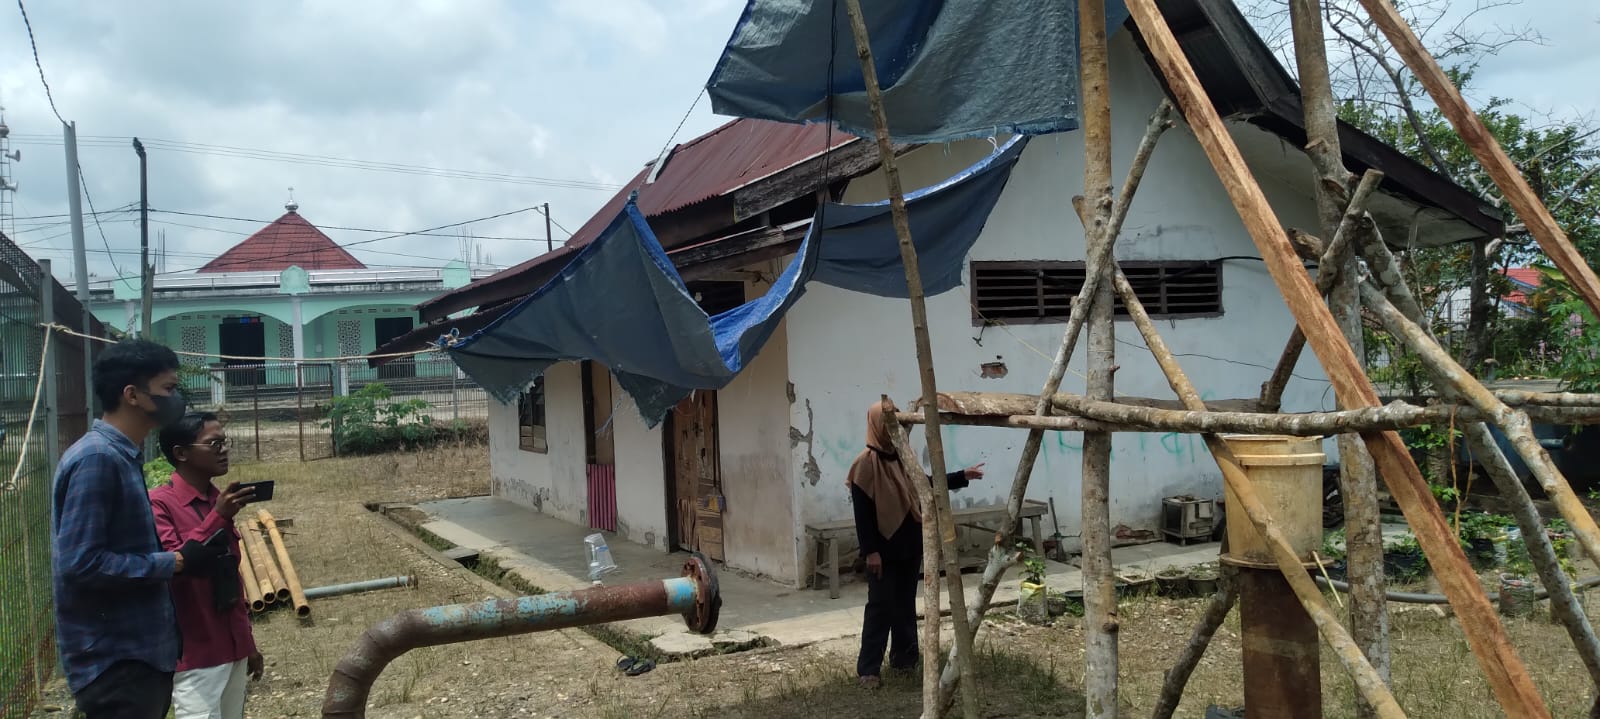 Motor Pompa Sumur Bor Rusak, 440 Rumah di Sarolangun Sulit Dapat Air Bersih 